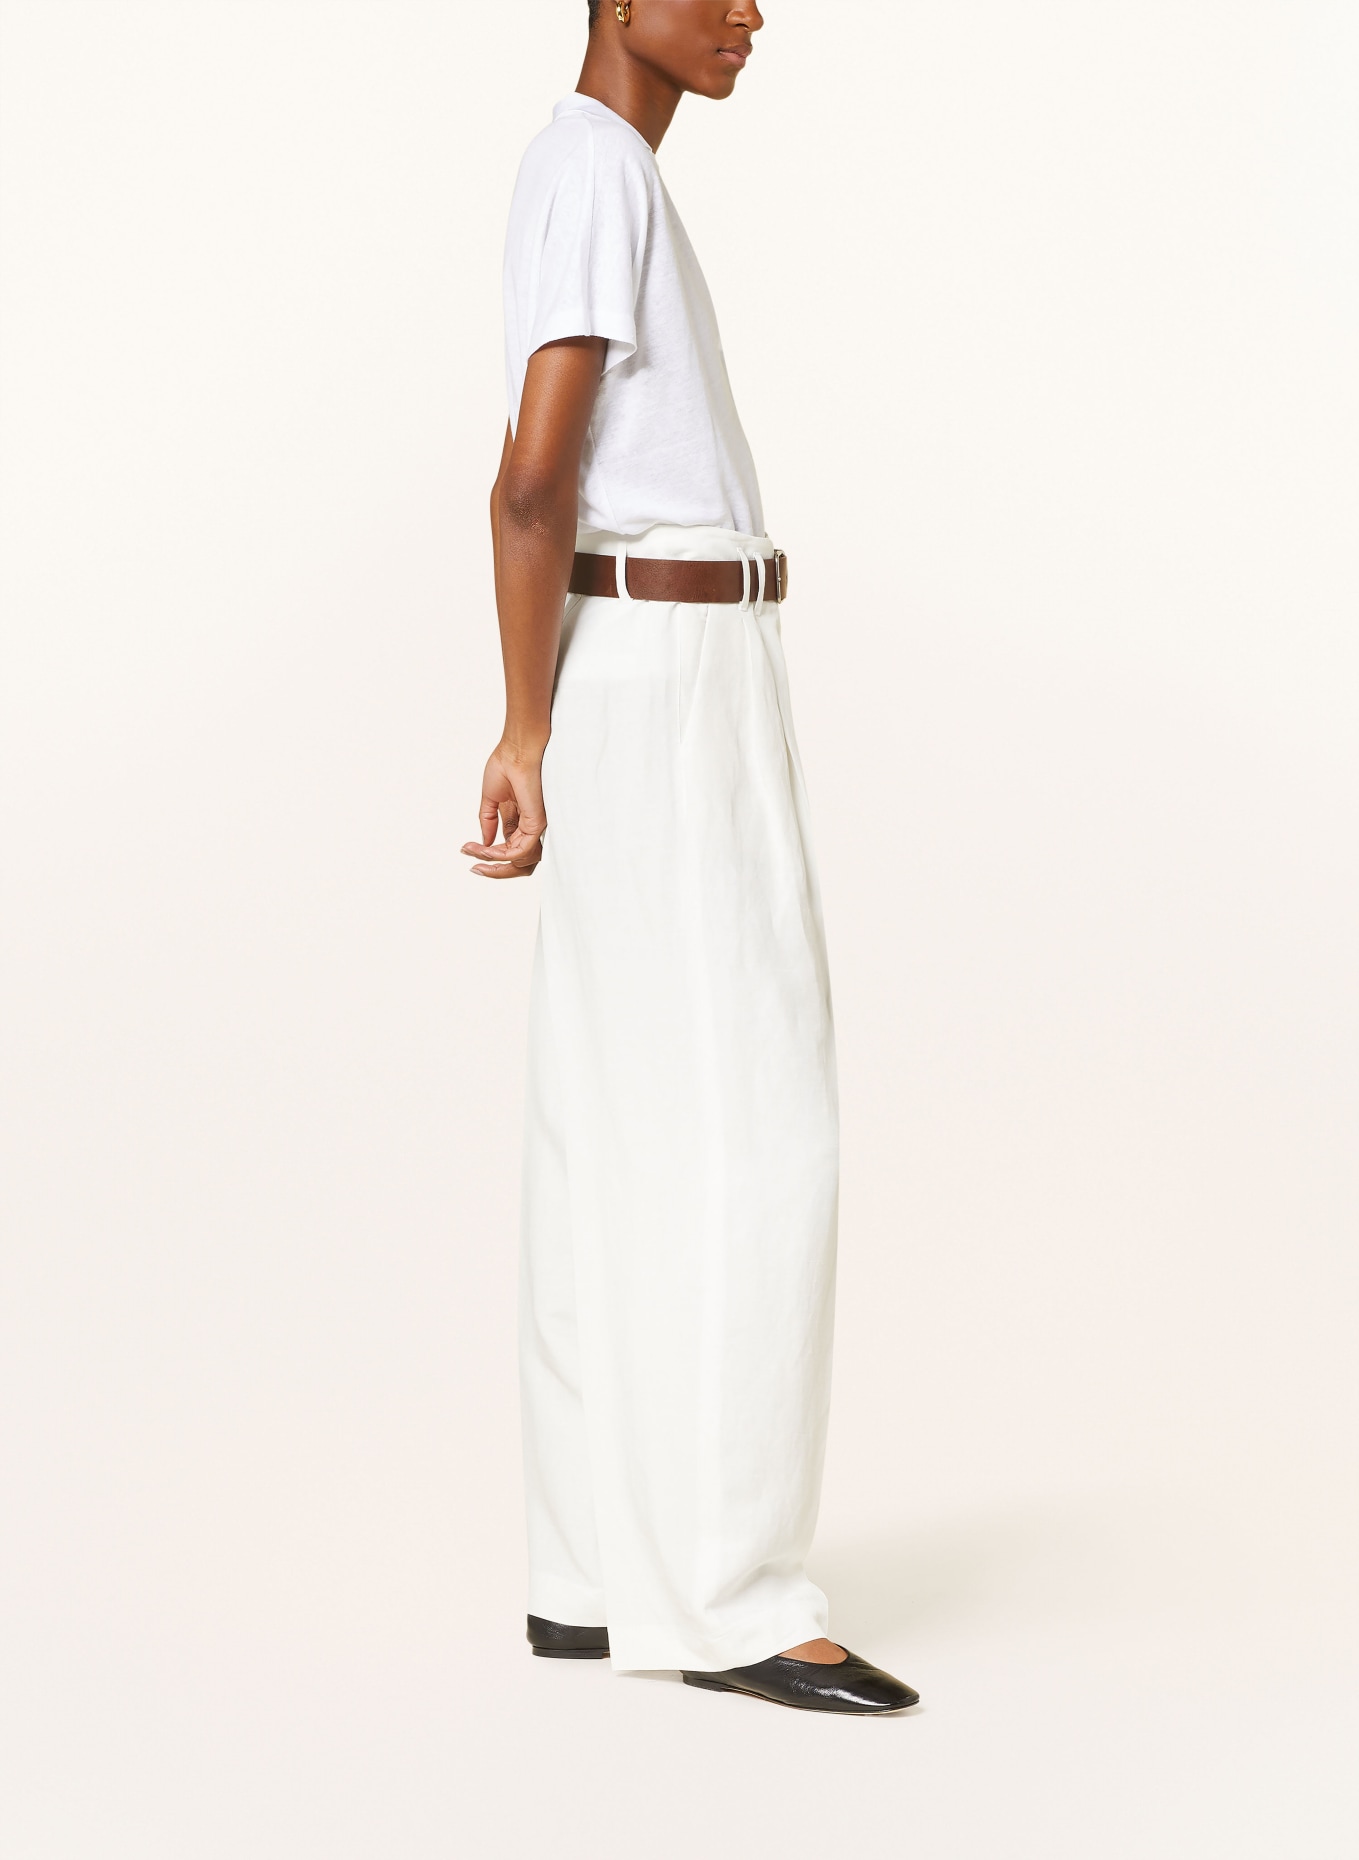 RAFFAELLO ROSSI Trousers MAYLA with linen, Color: CREAM (Image 4)